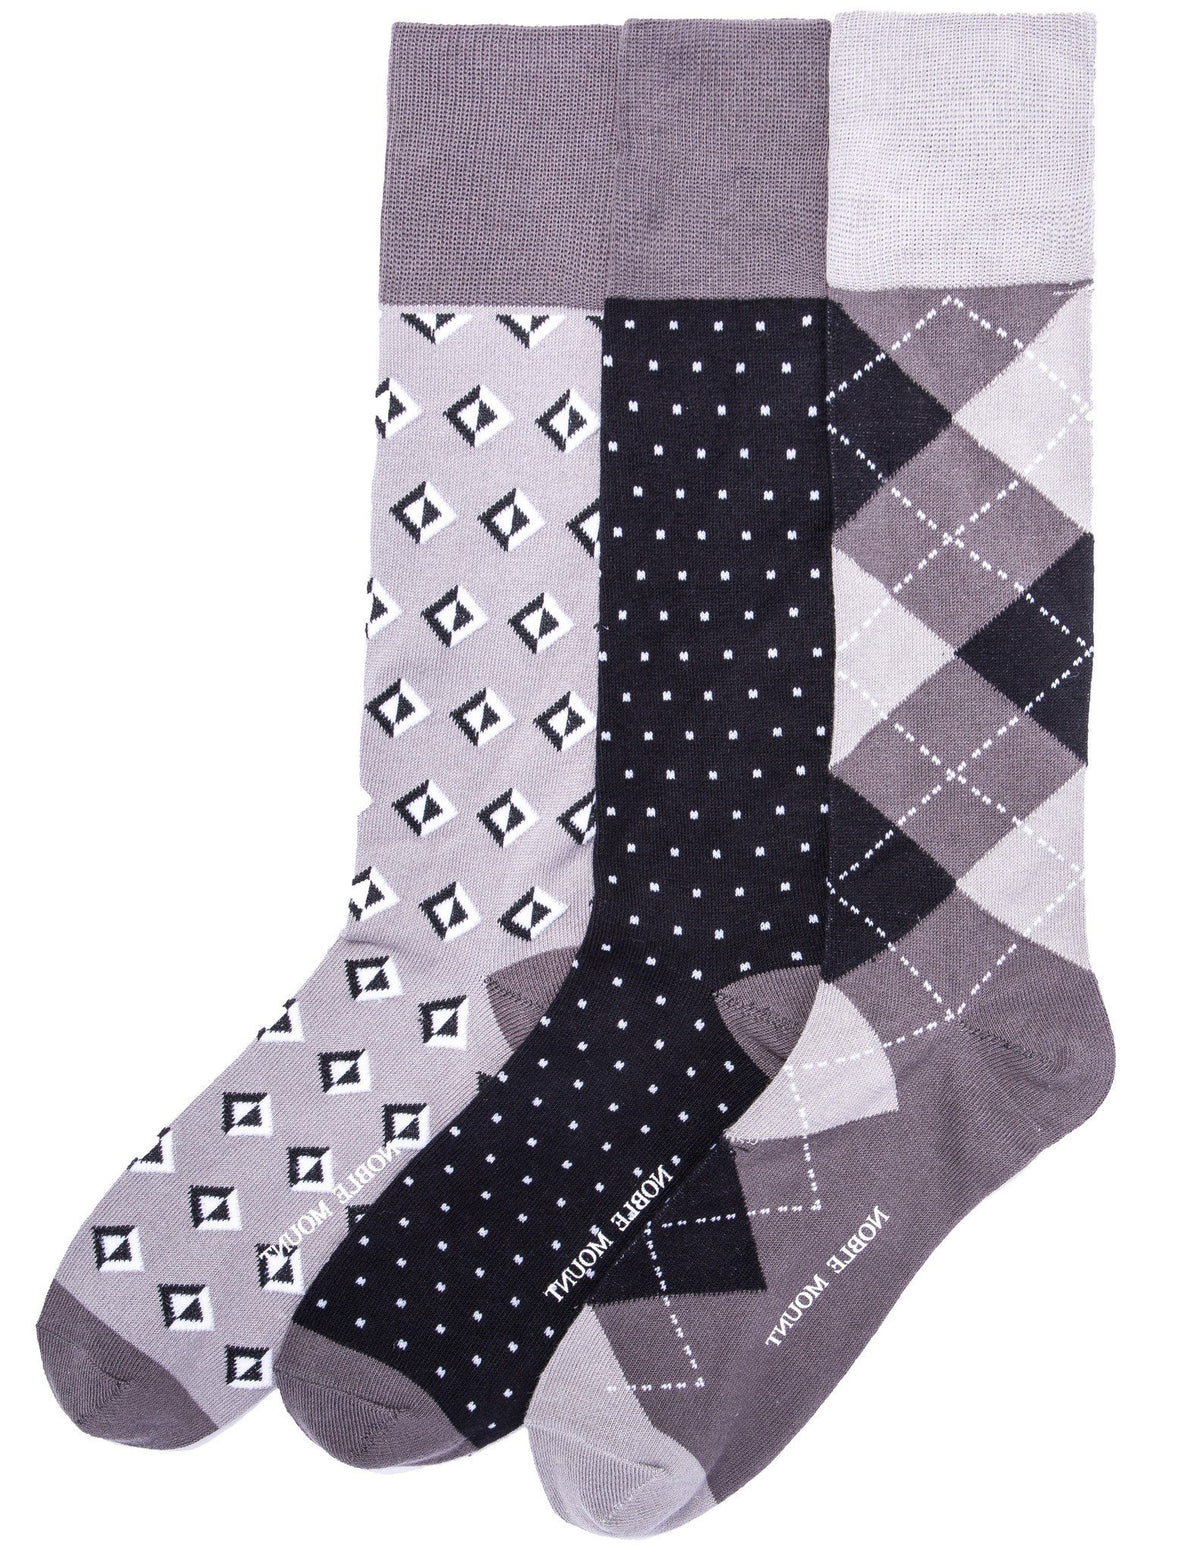 Men's Combed Cotton Dress Socks 3-Pack - Set C10